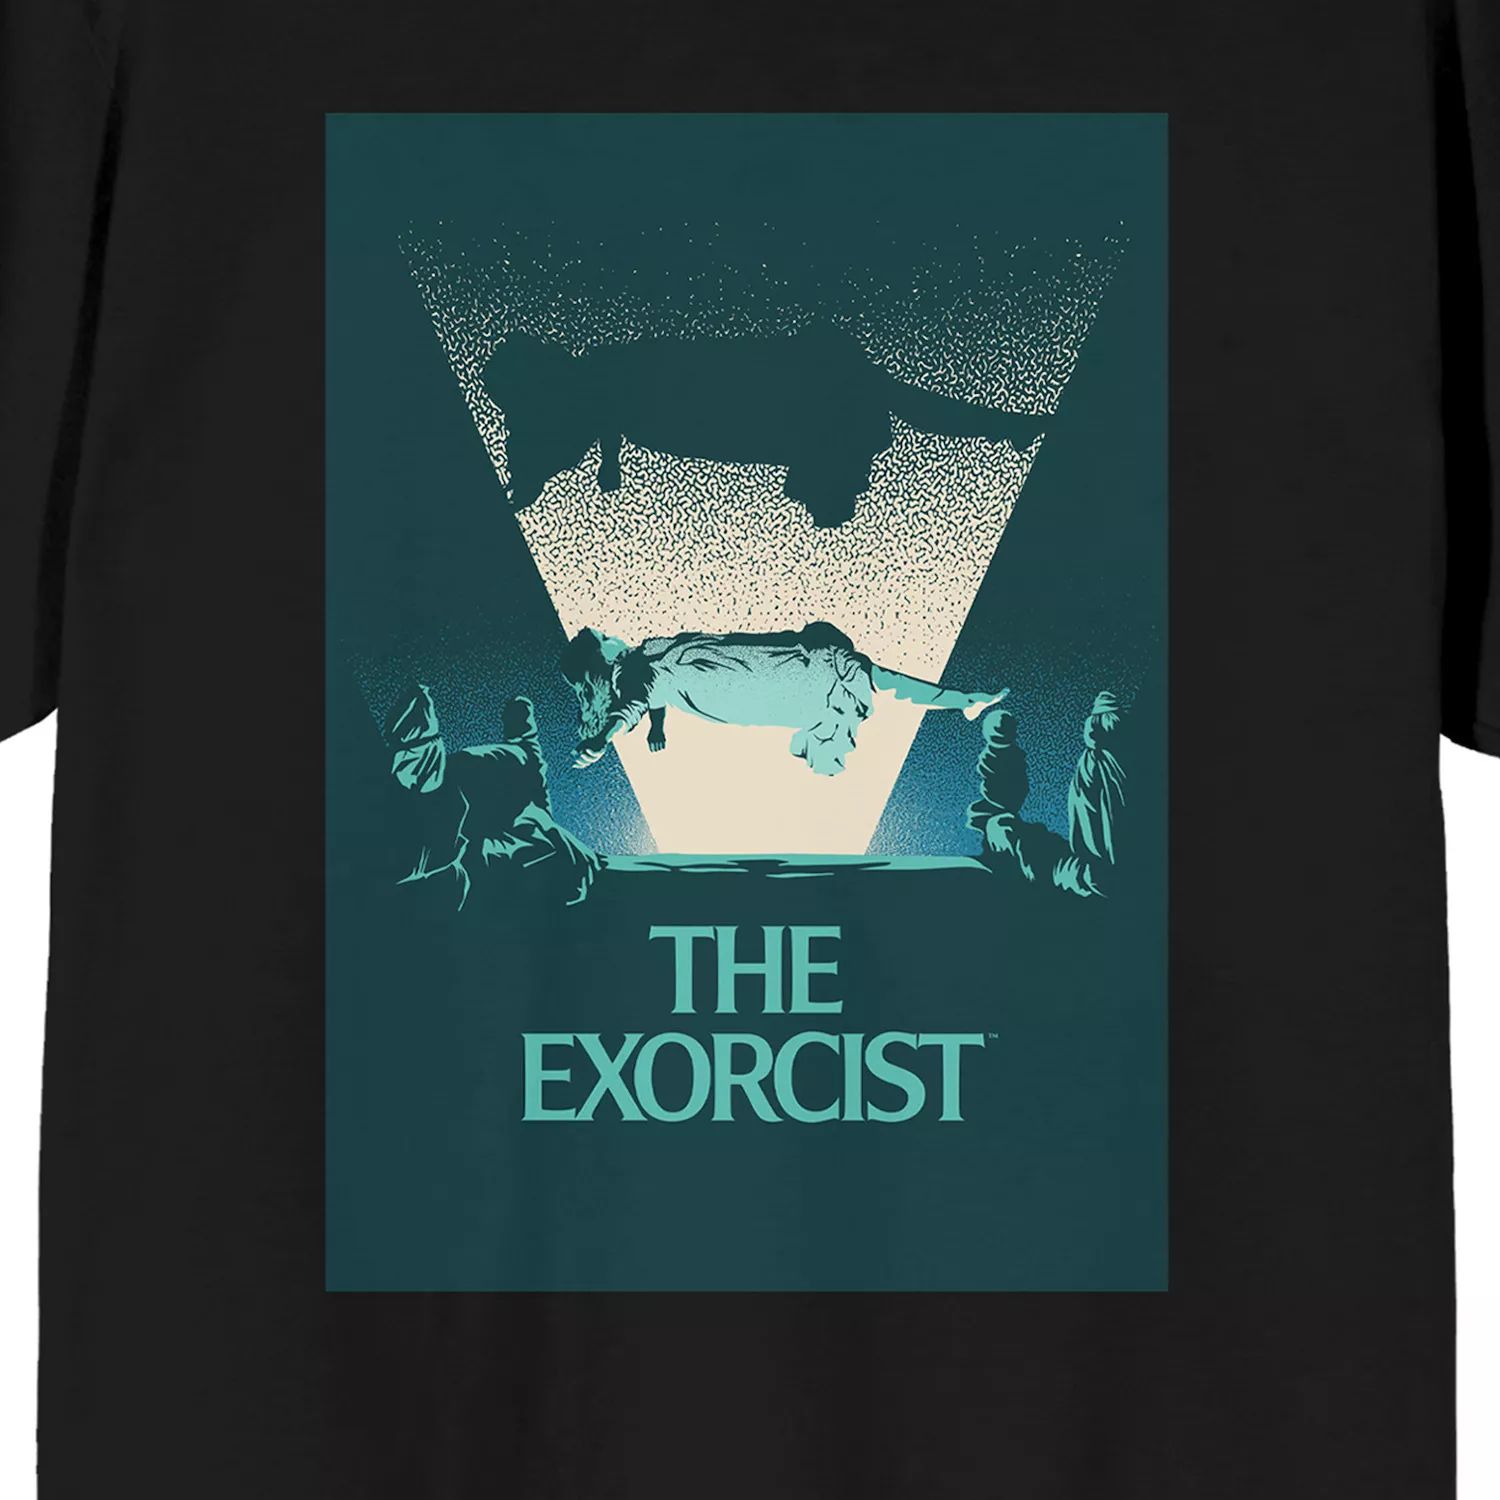 Мужская плавающая футболка The Exorcist Regan Licensed Character фигурка neca toony terrors – the exorcist regan scale figure series 4 15 см